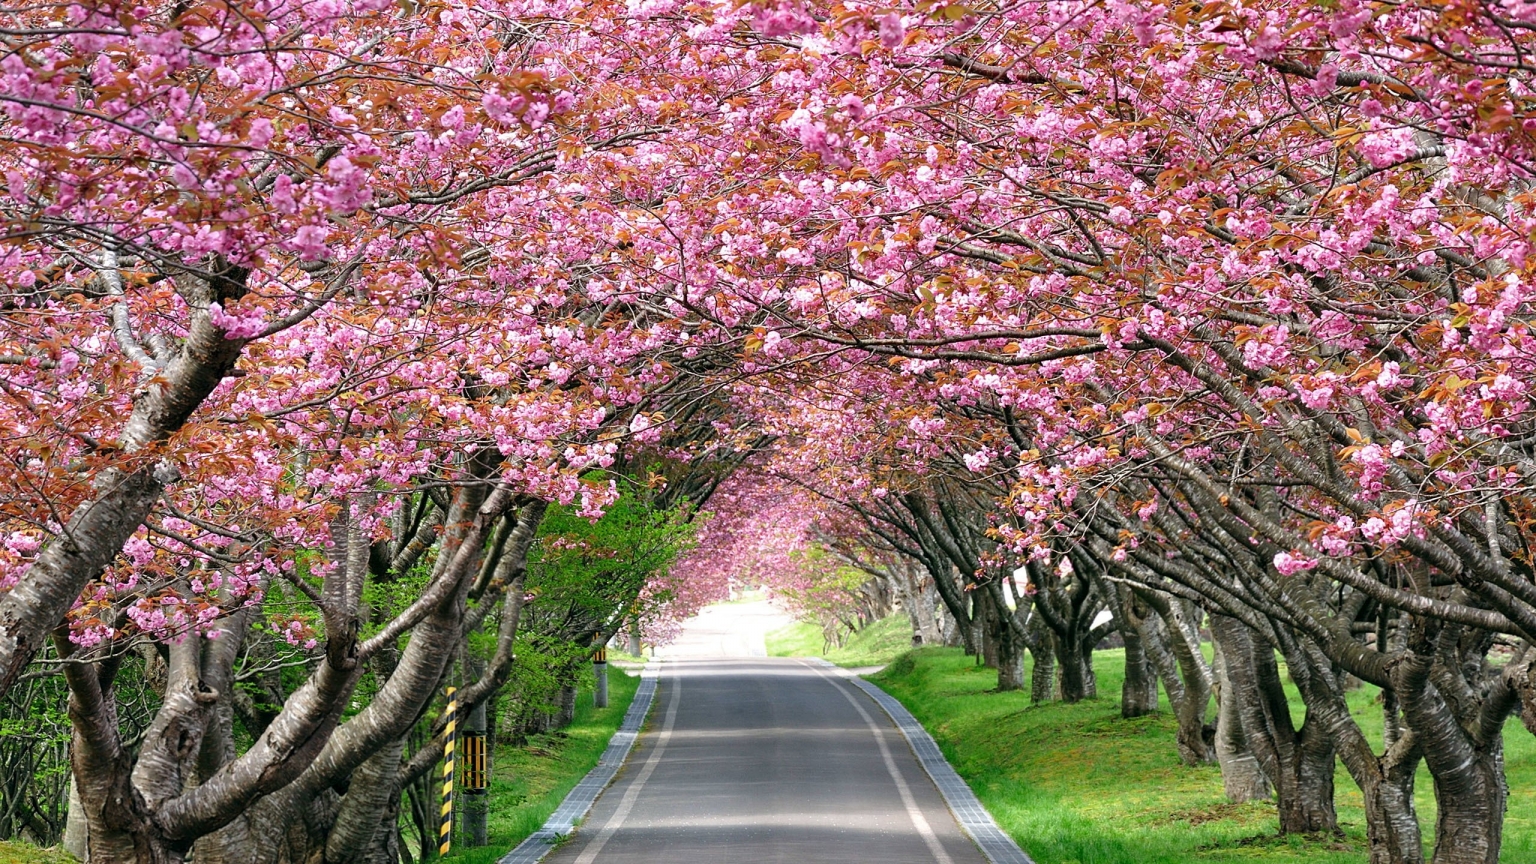 Splendid Cherry Blossom for 1536 x 864 HDTV resolution